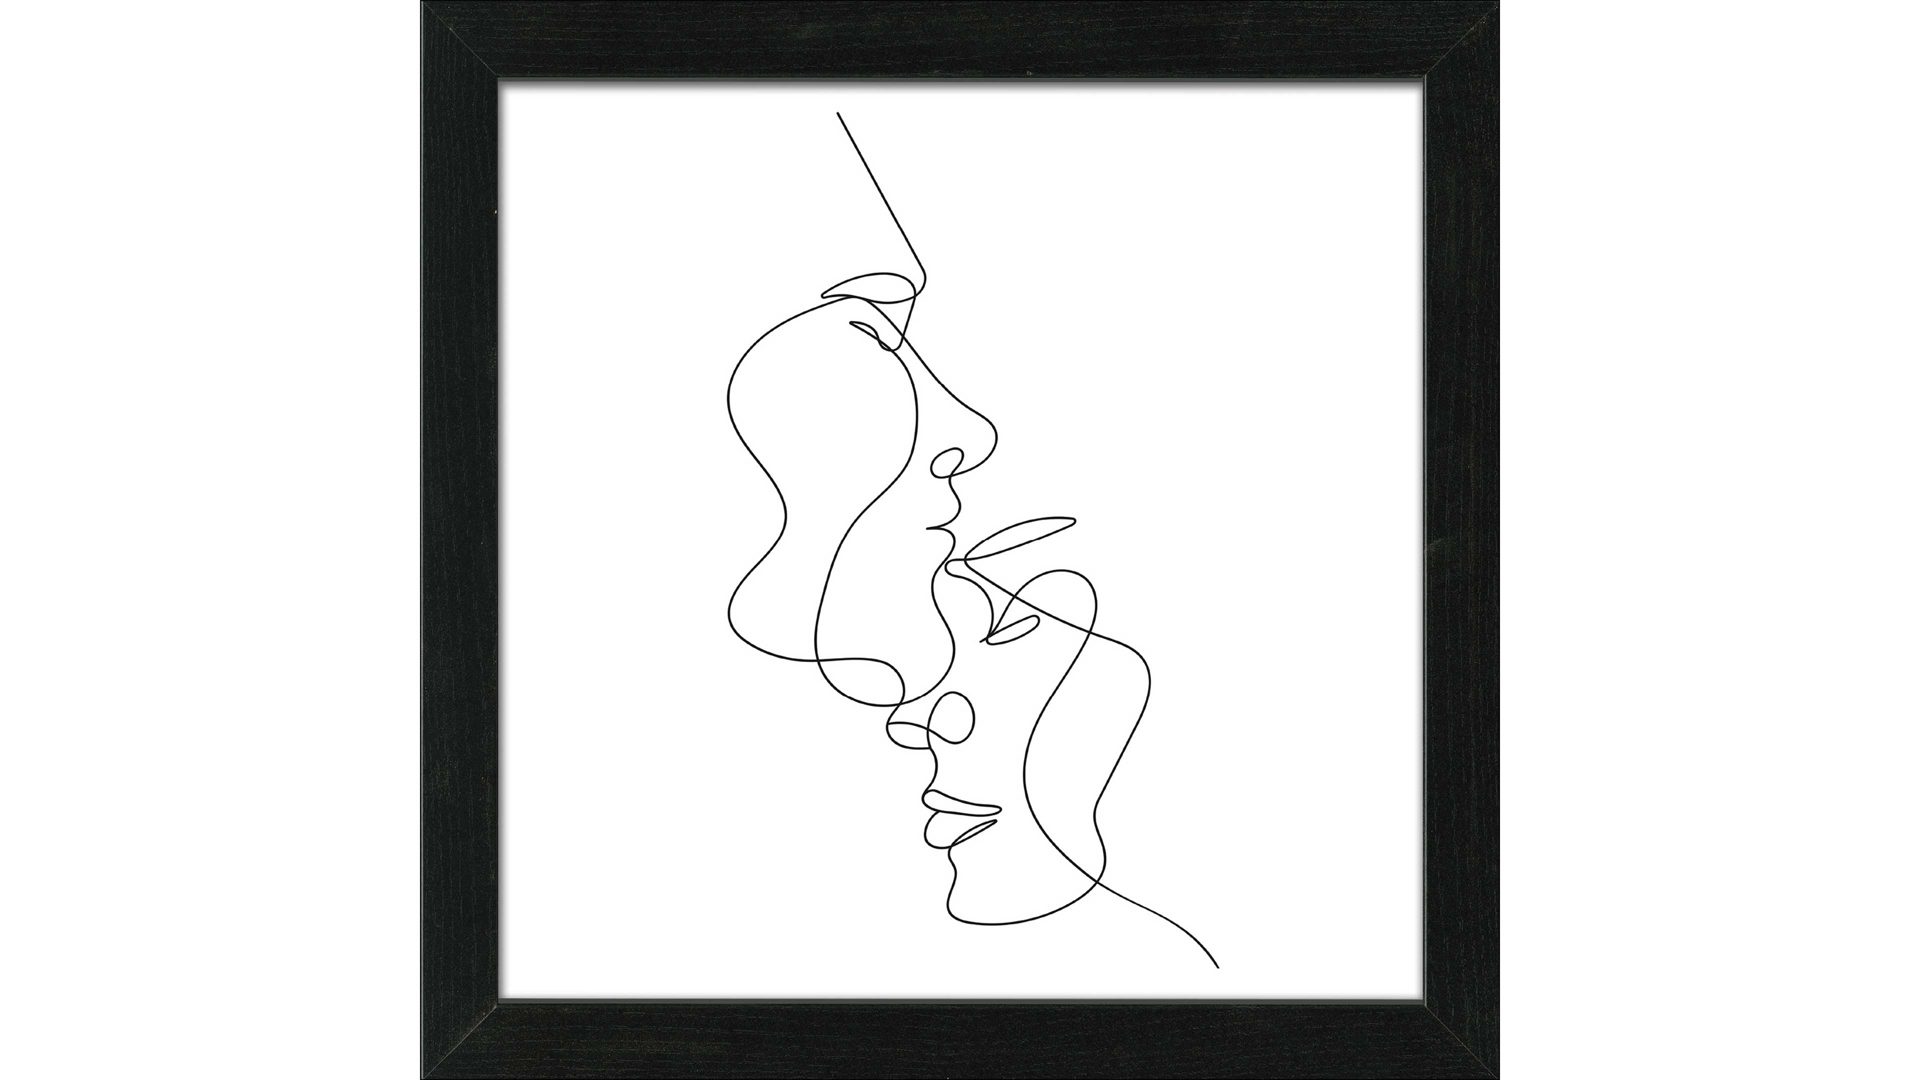 Kunstdruck Pro®art bilderpalette aus Karton / Papier / Pappe in Weiß PRO®ART Kunstdruck Line Art Faces IV Weiß & Schwarz - ca. 55 x 55 cm